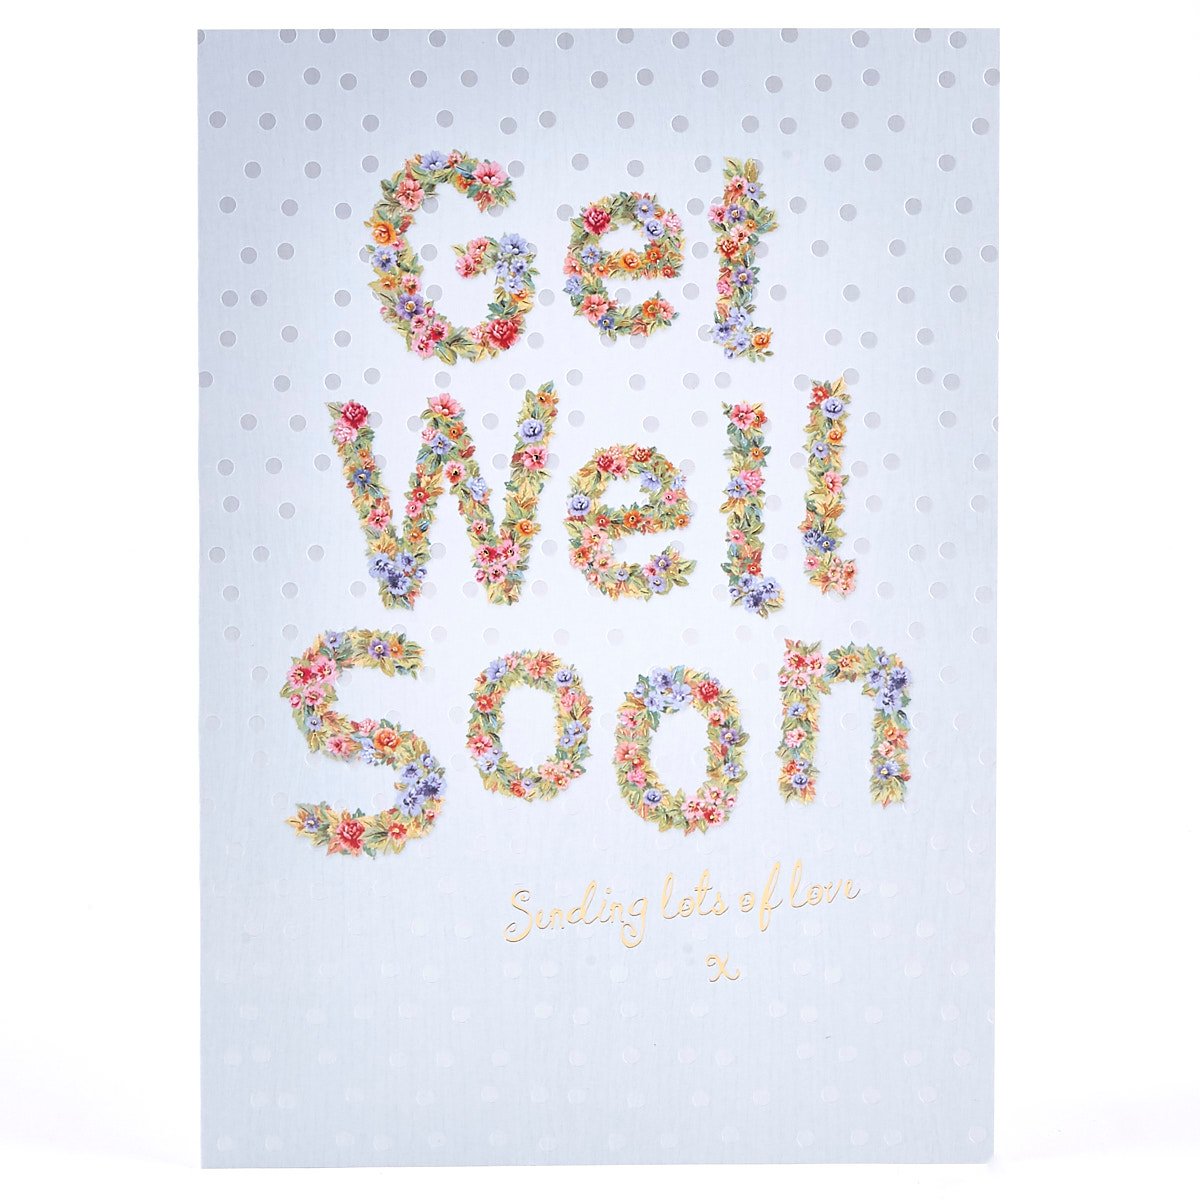 Get Well Soon Card - Flower Text